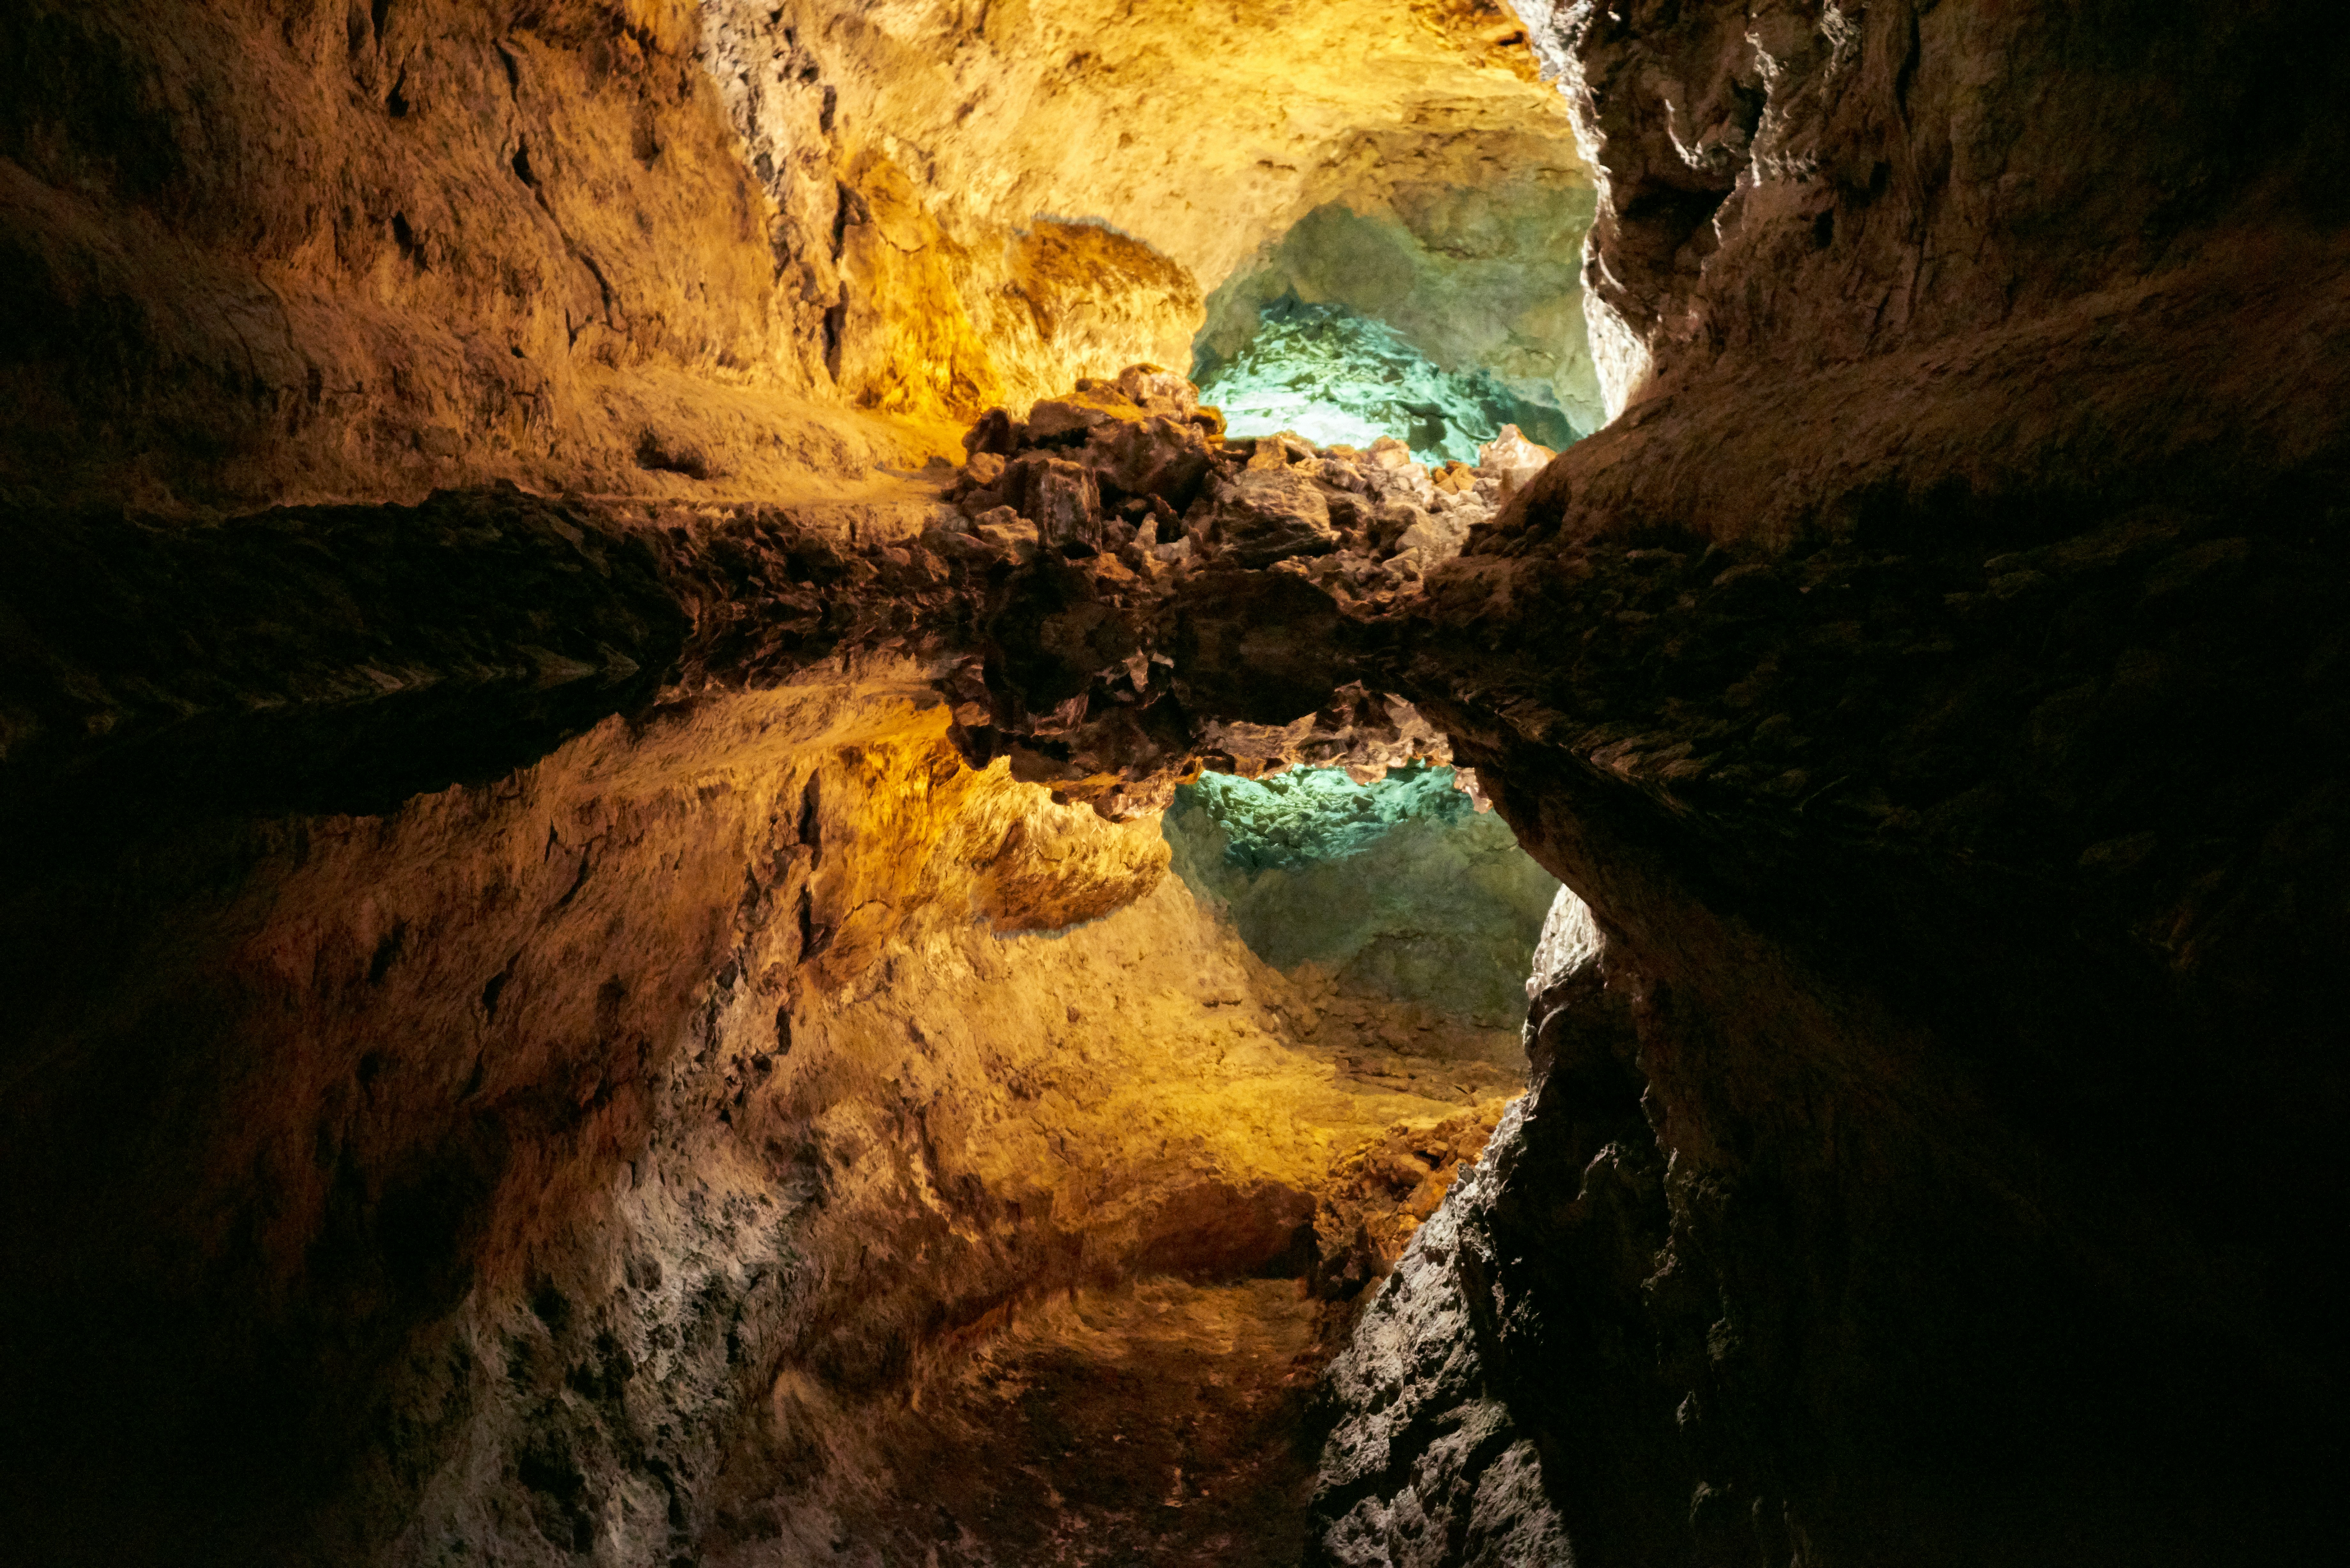 Deep in Cueva de los Verdes